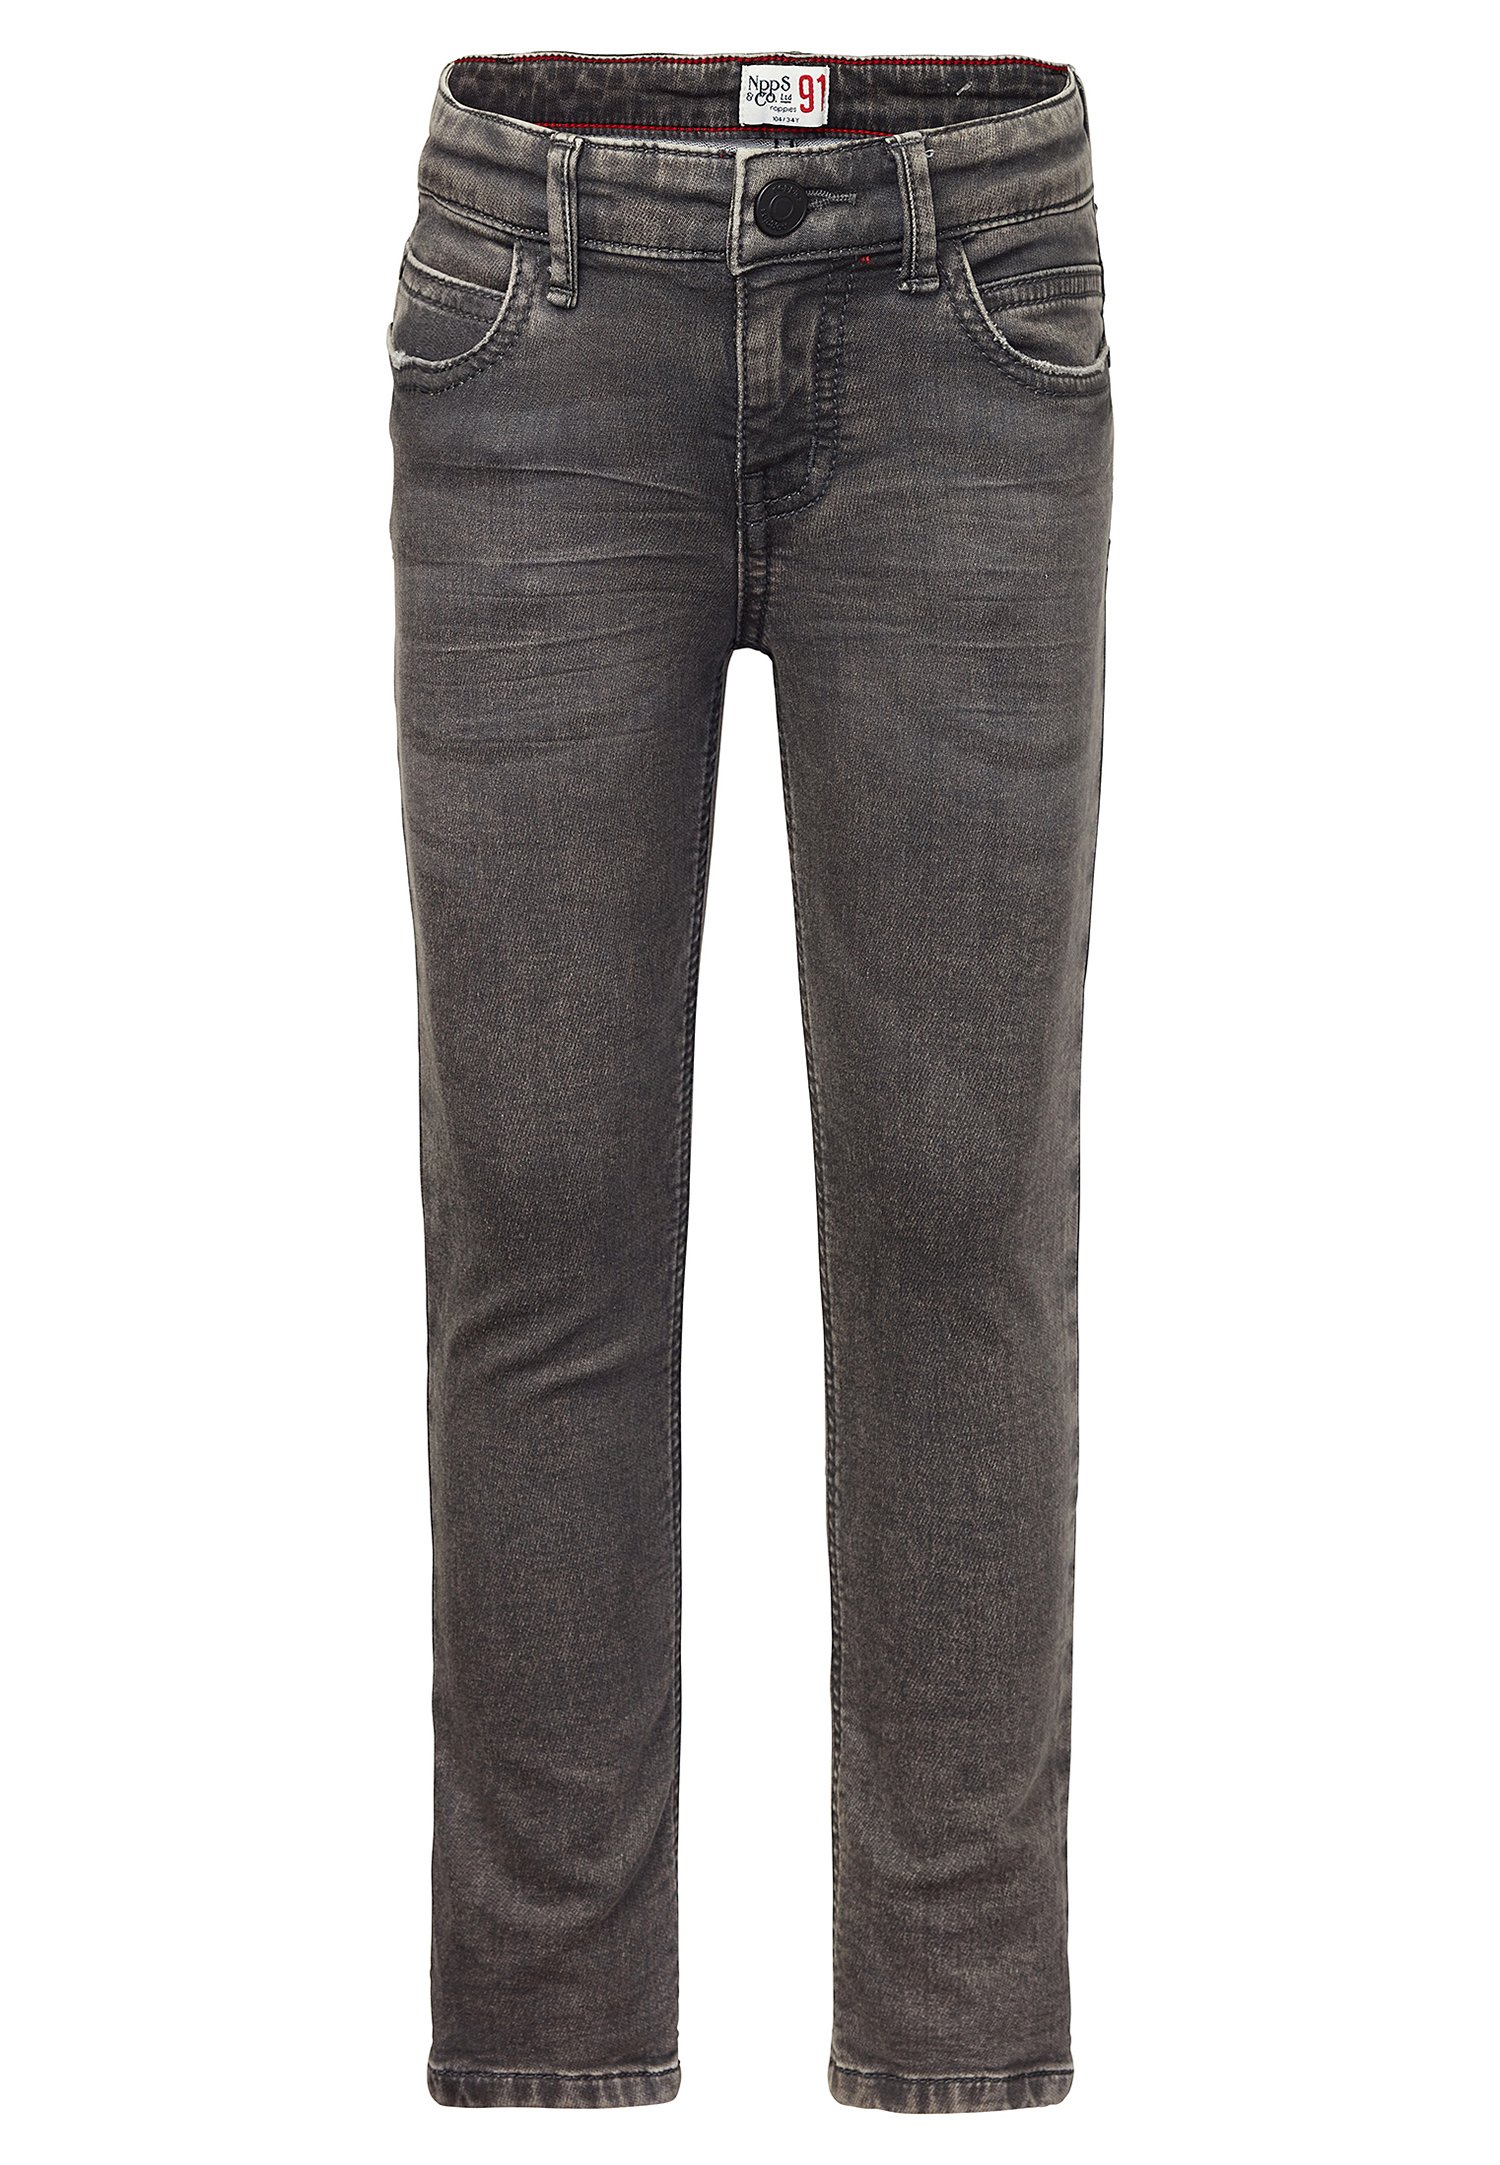 Noppies Jeans Skinny Fit - dark grey wash/grau